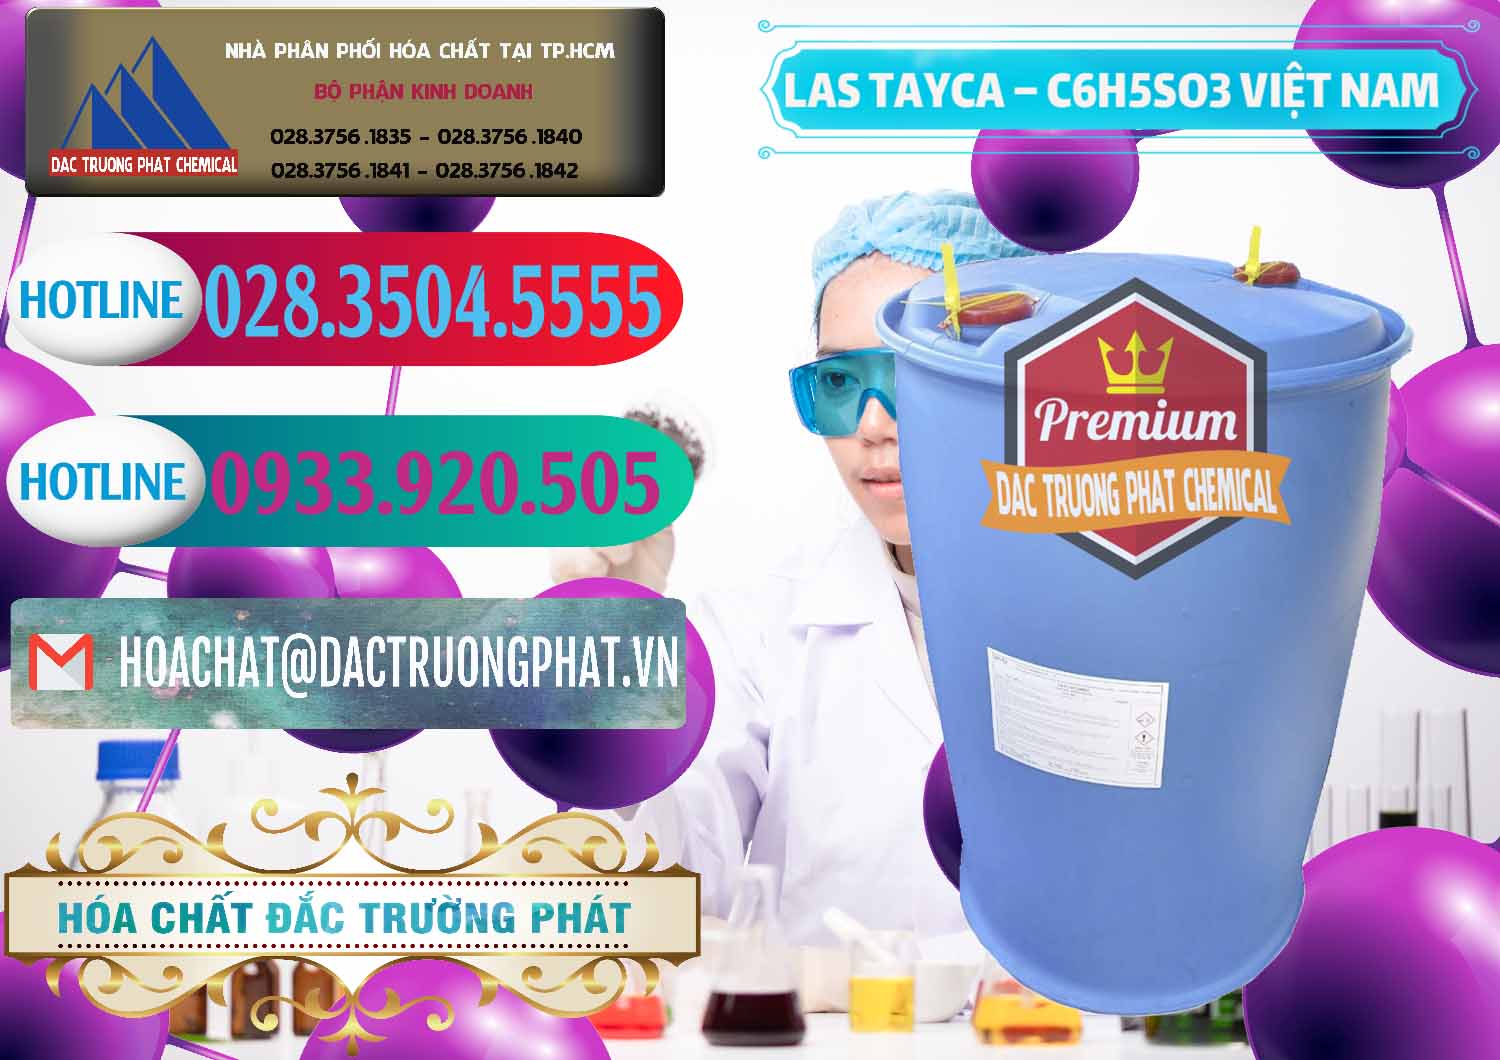 Nơi chuyên cung ứng _ phân phối Chất tạo bọt Las Tayca Việt Nam - 0305 - Chuyên cung cấp - kinh doanh hóa chất tại TP.HCM - truongphat.vn